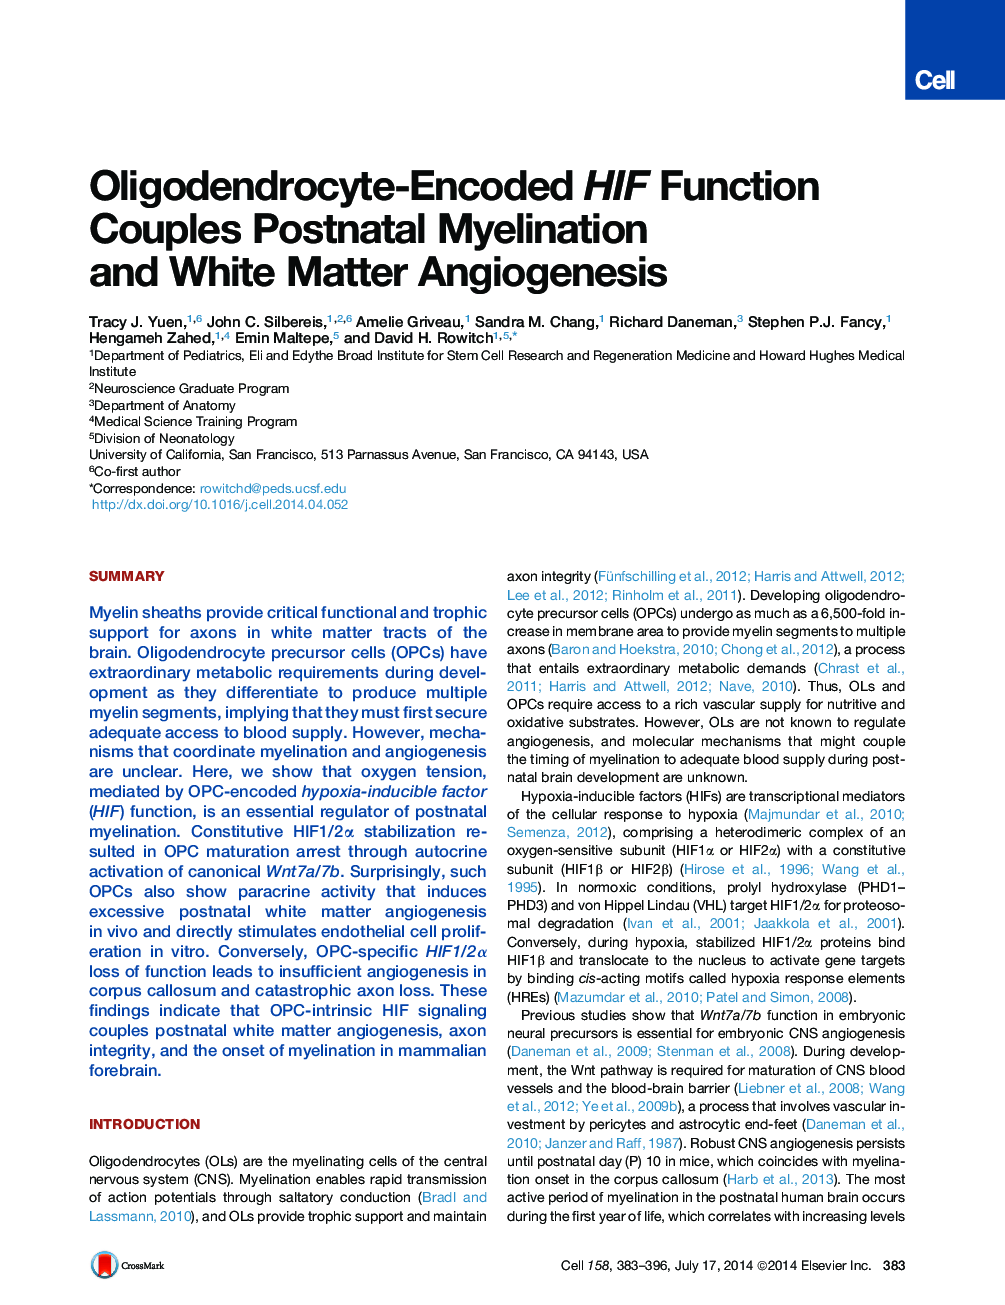 Oligodendrocyte-Encoded HIF Function Couples Postnatal Myelination and White Matter Angiogenesis